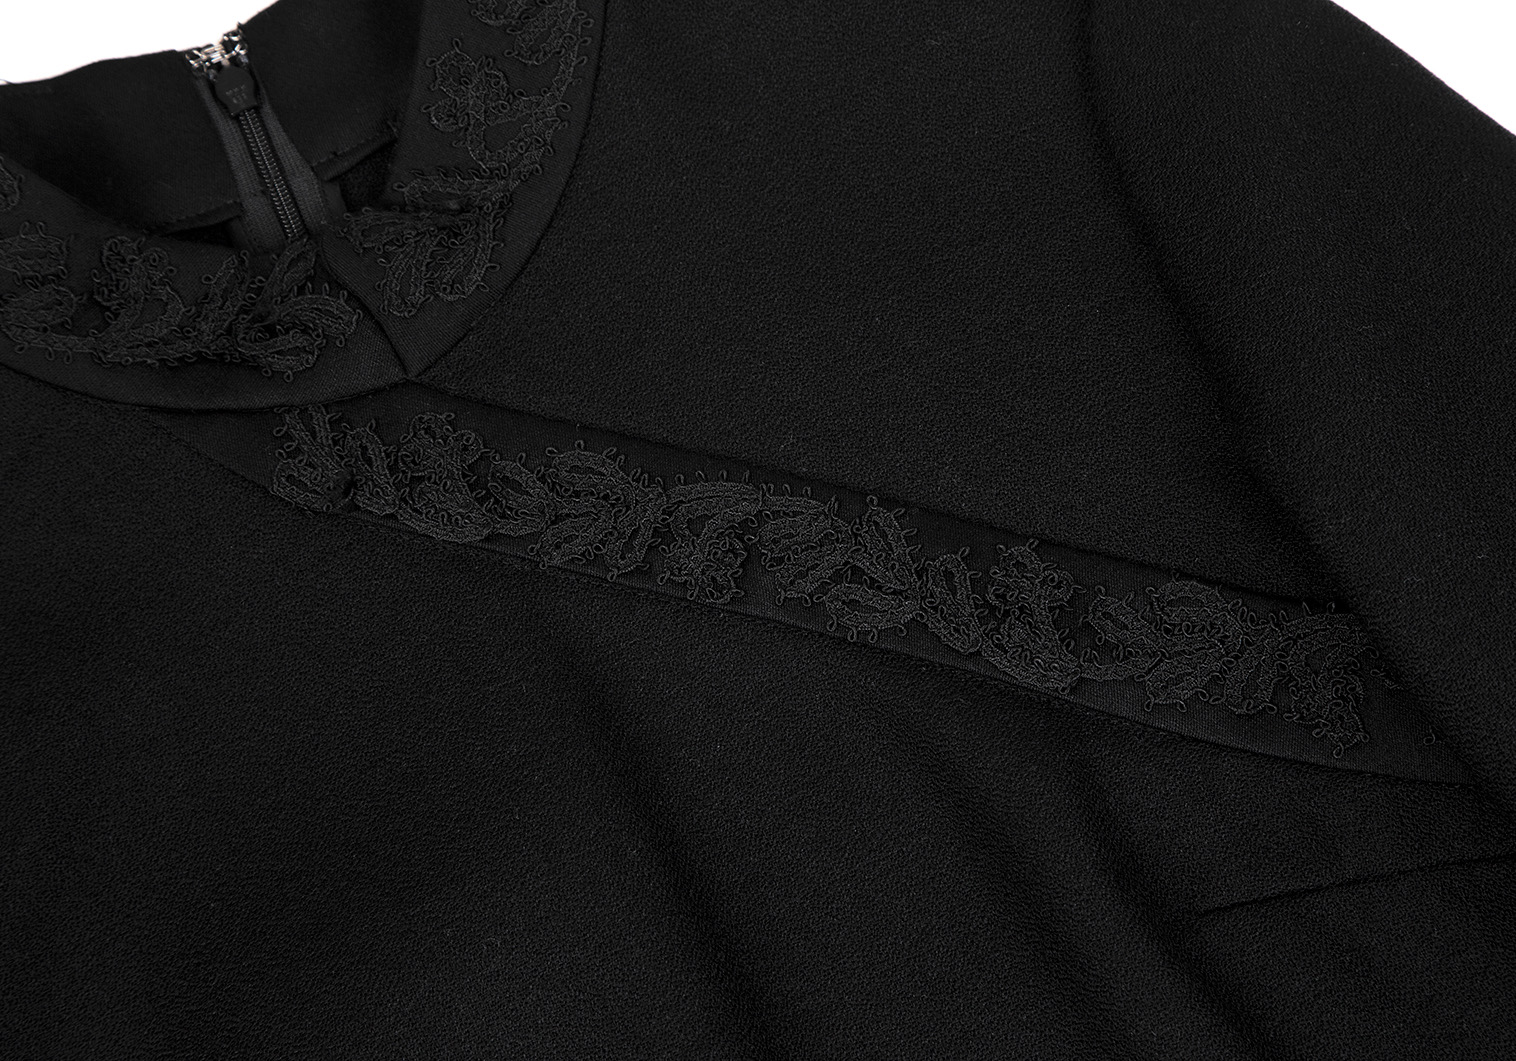 ケイタマルヤマ ワンピース ひざ丈 長袖 刺繍 1 黒 ブラック /MF ■OS